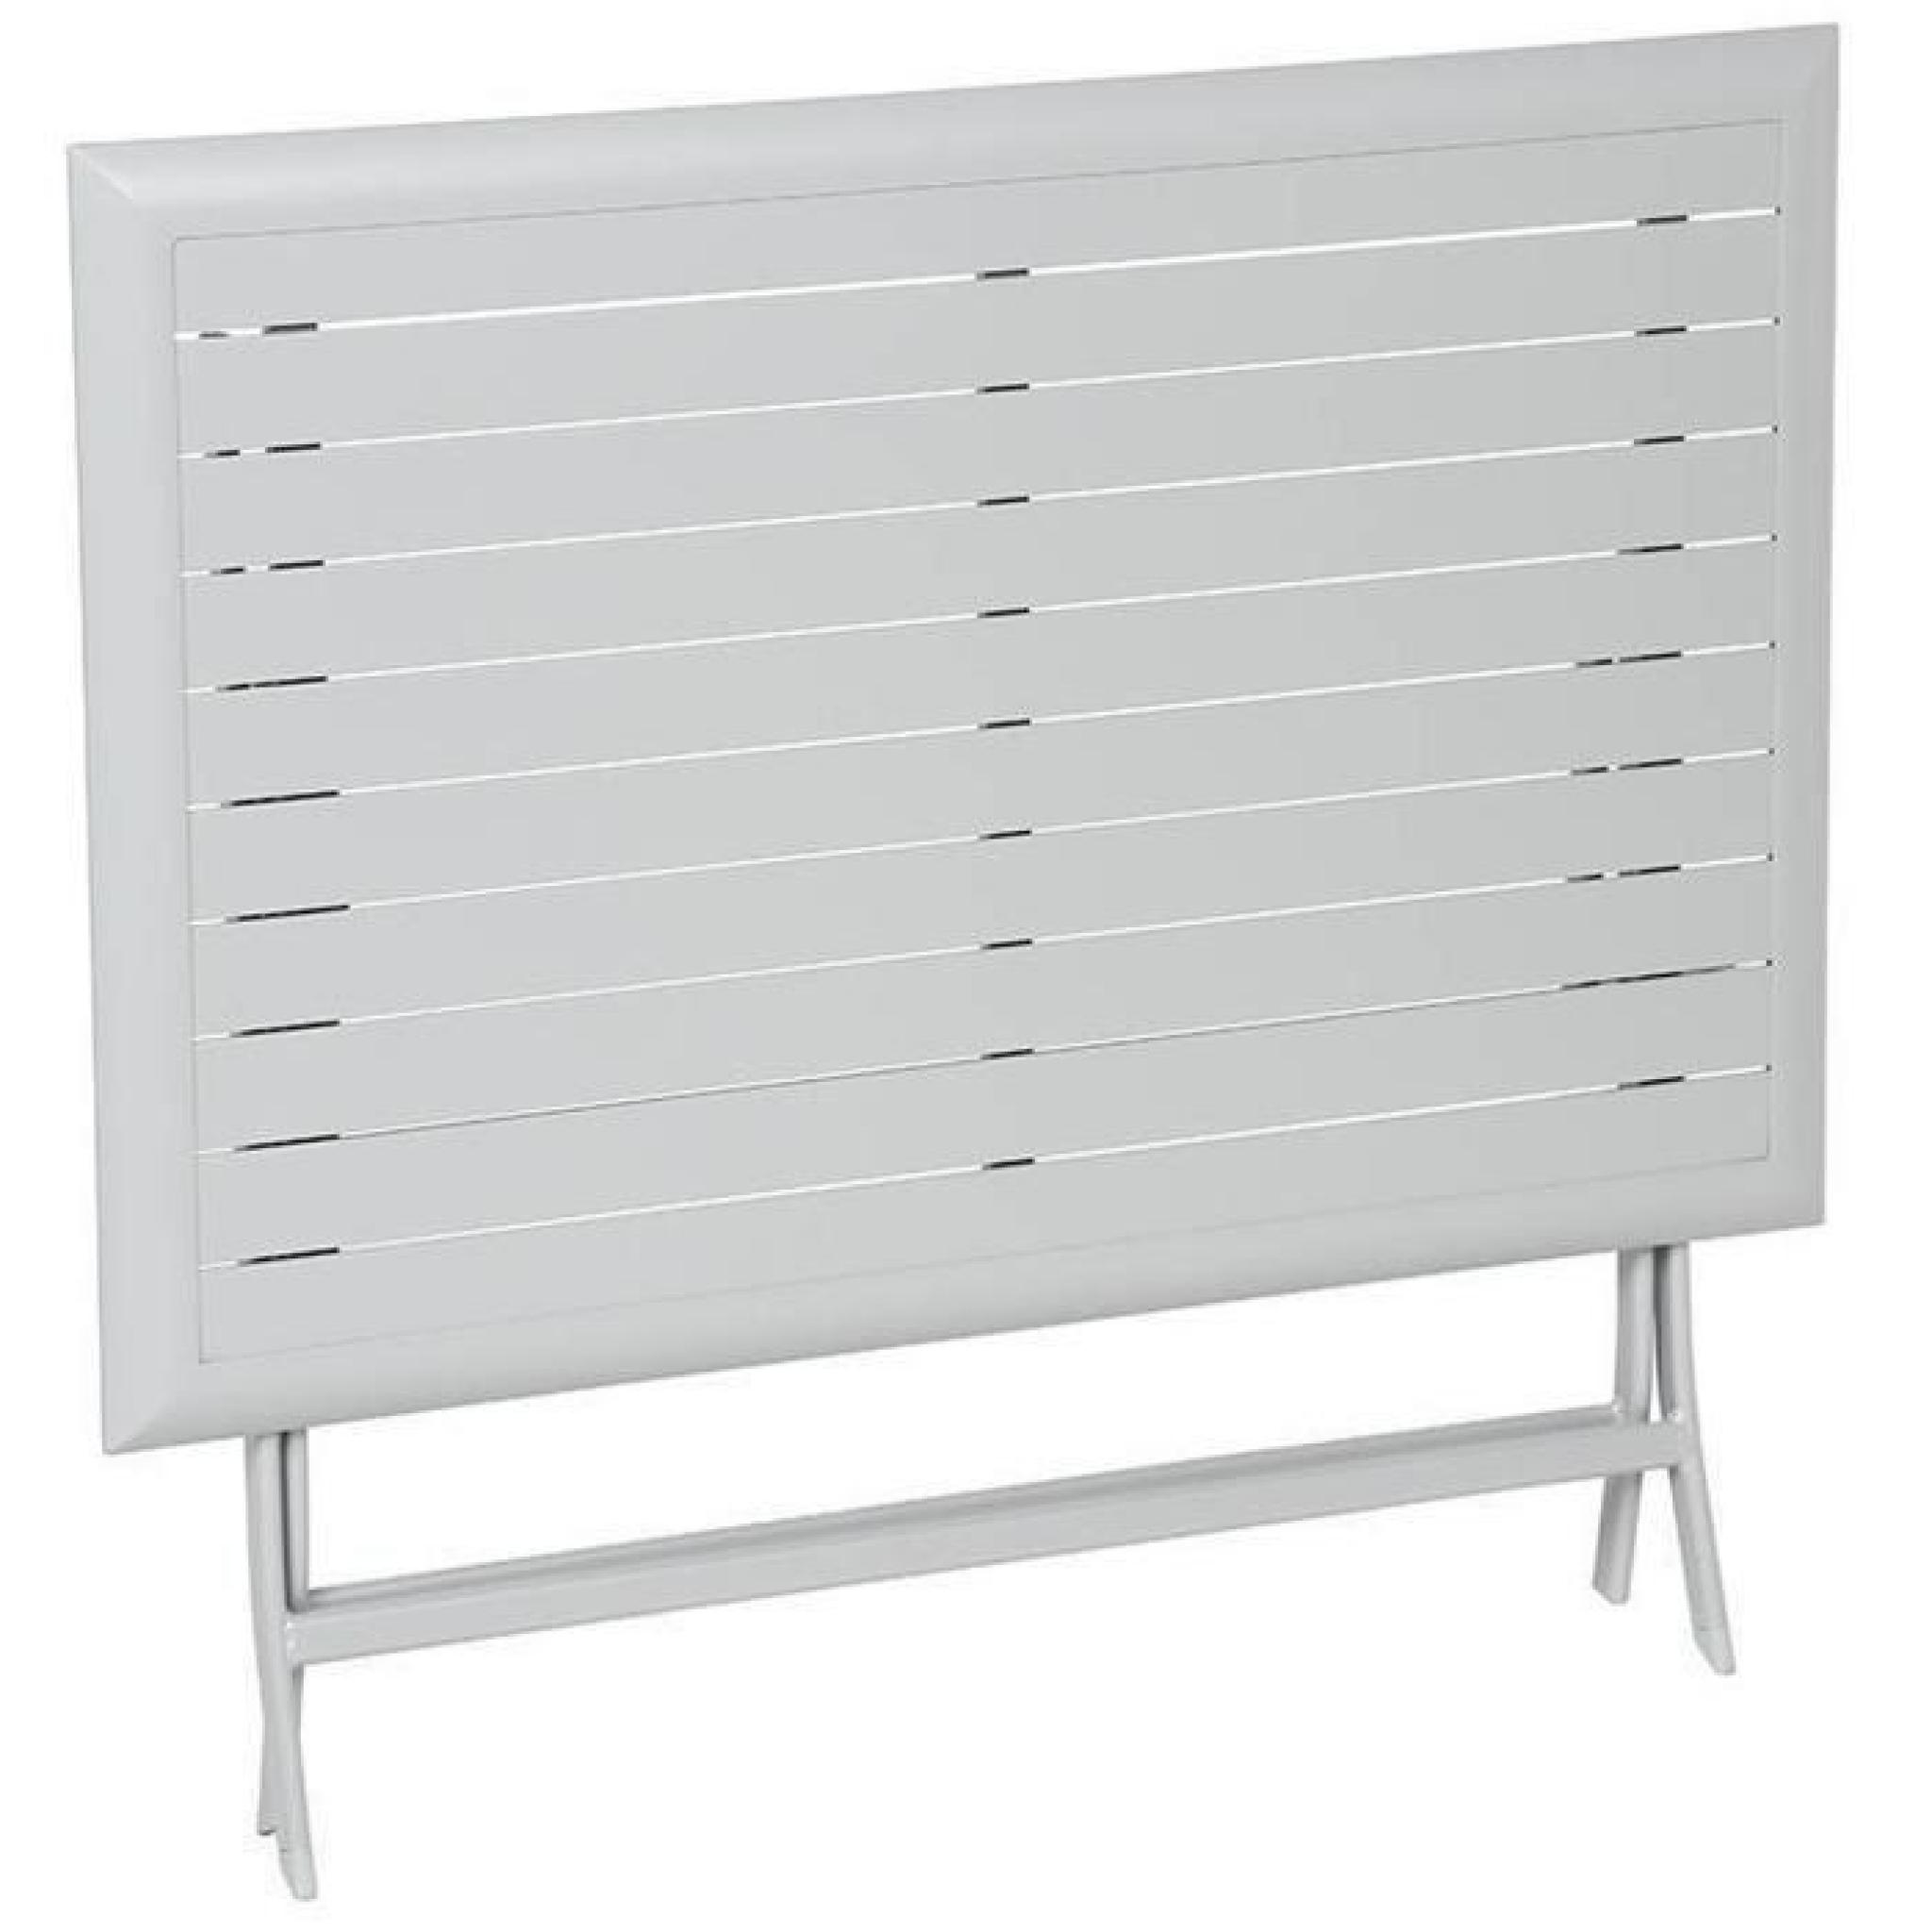 Table pliante rectangulaire en Aluminium coloris silver mat - Dim : L 150 x P 80 x H 71 cm  pas cher